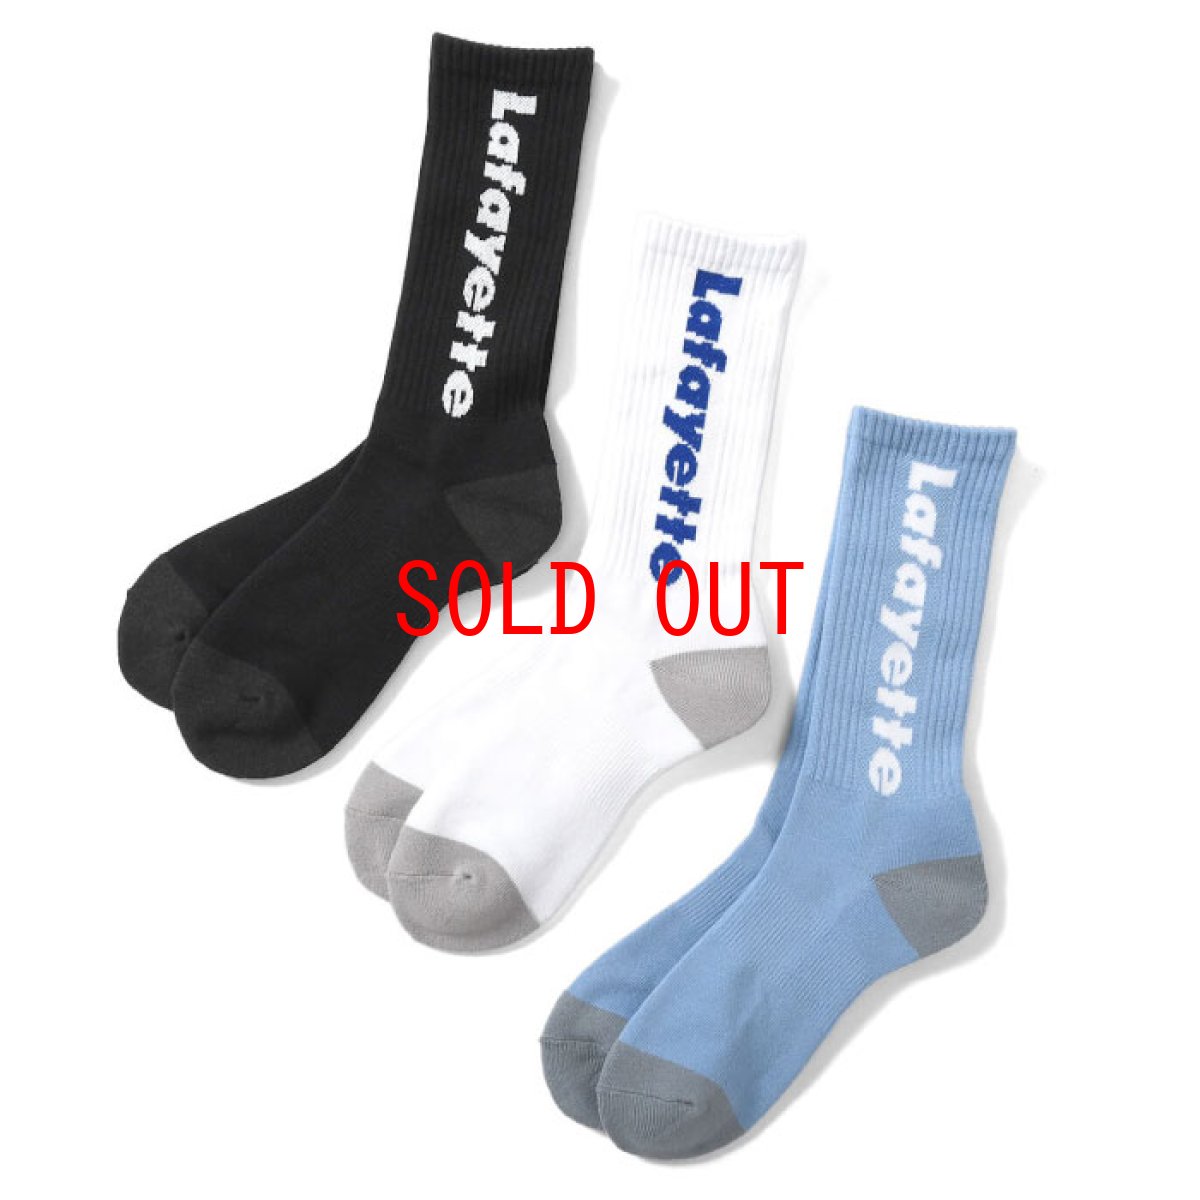 画像1: Logo Socks ソックス 靴下 ジャガード ハイソックス 抗菌防臭 吸汗速乾 Black White Light Blue ブラック ホワイト ライト ブルー by Lafayette ラファイエット  (1)